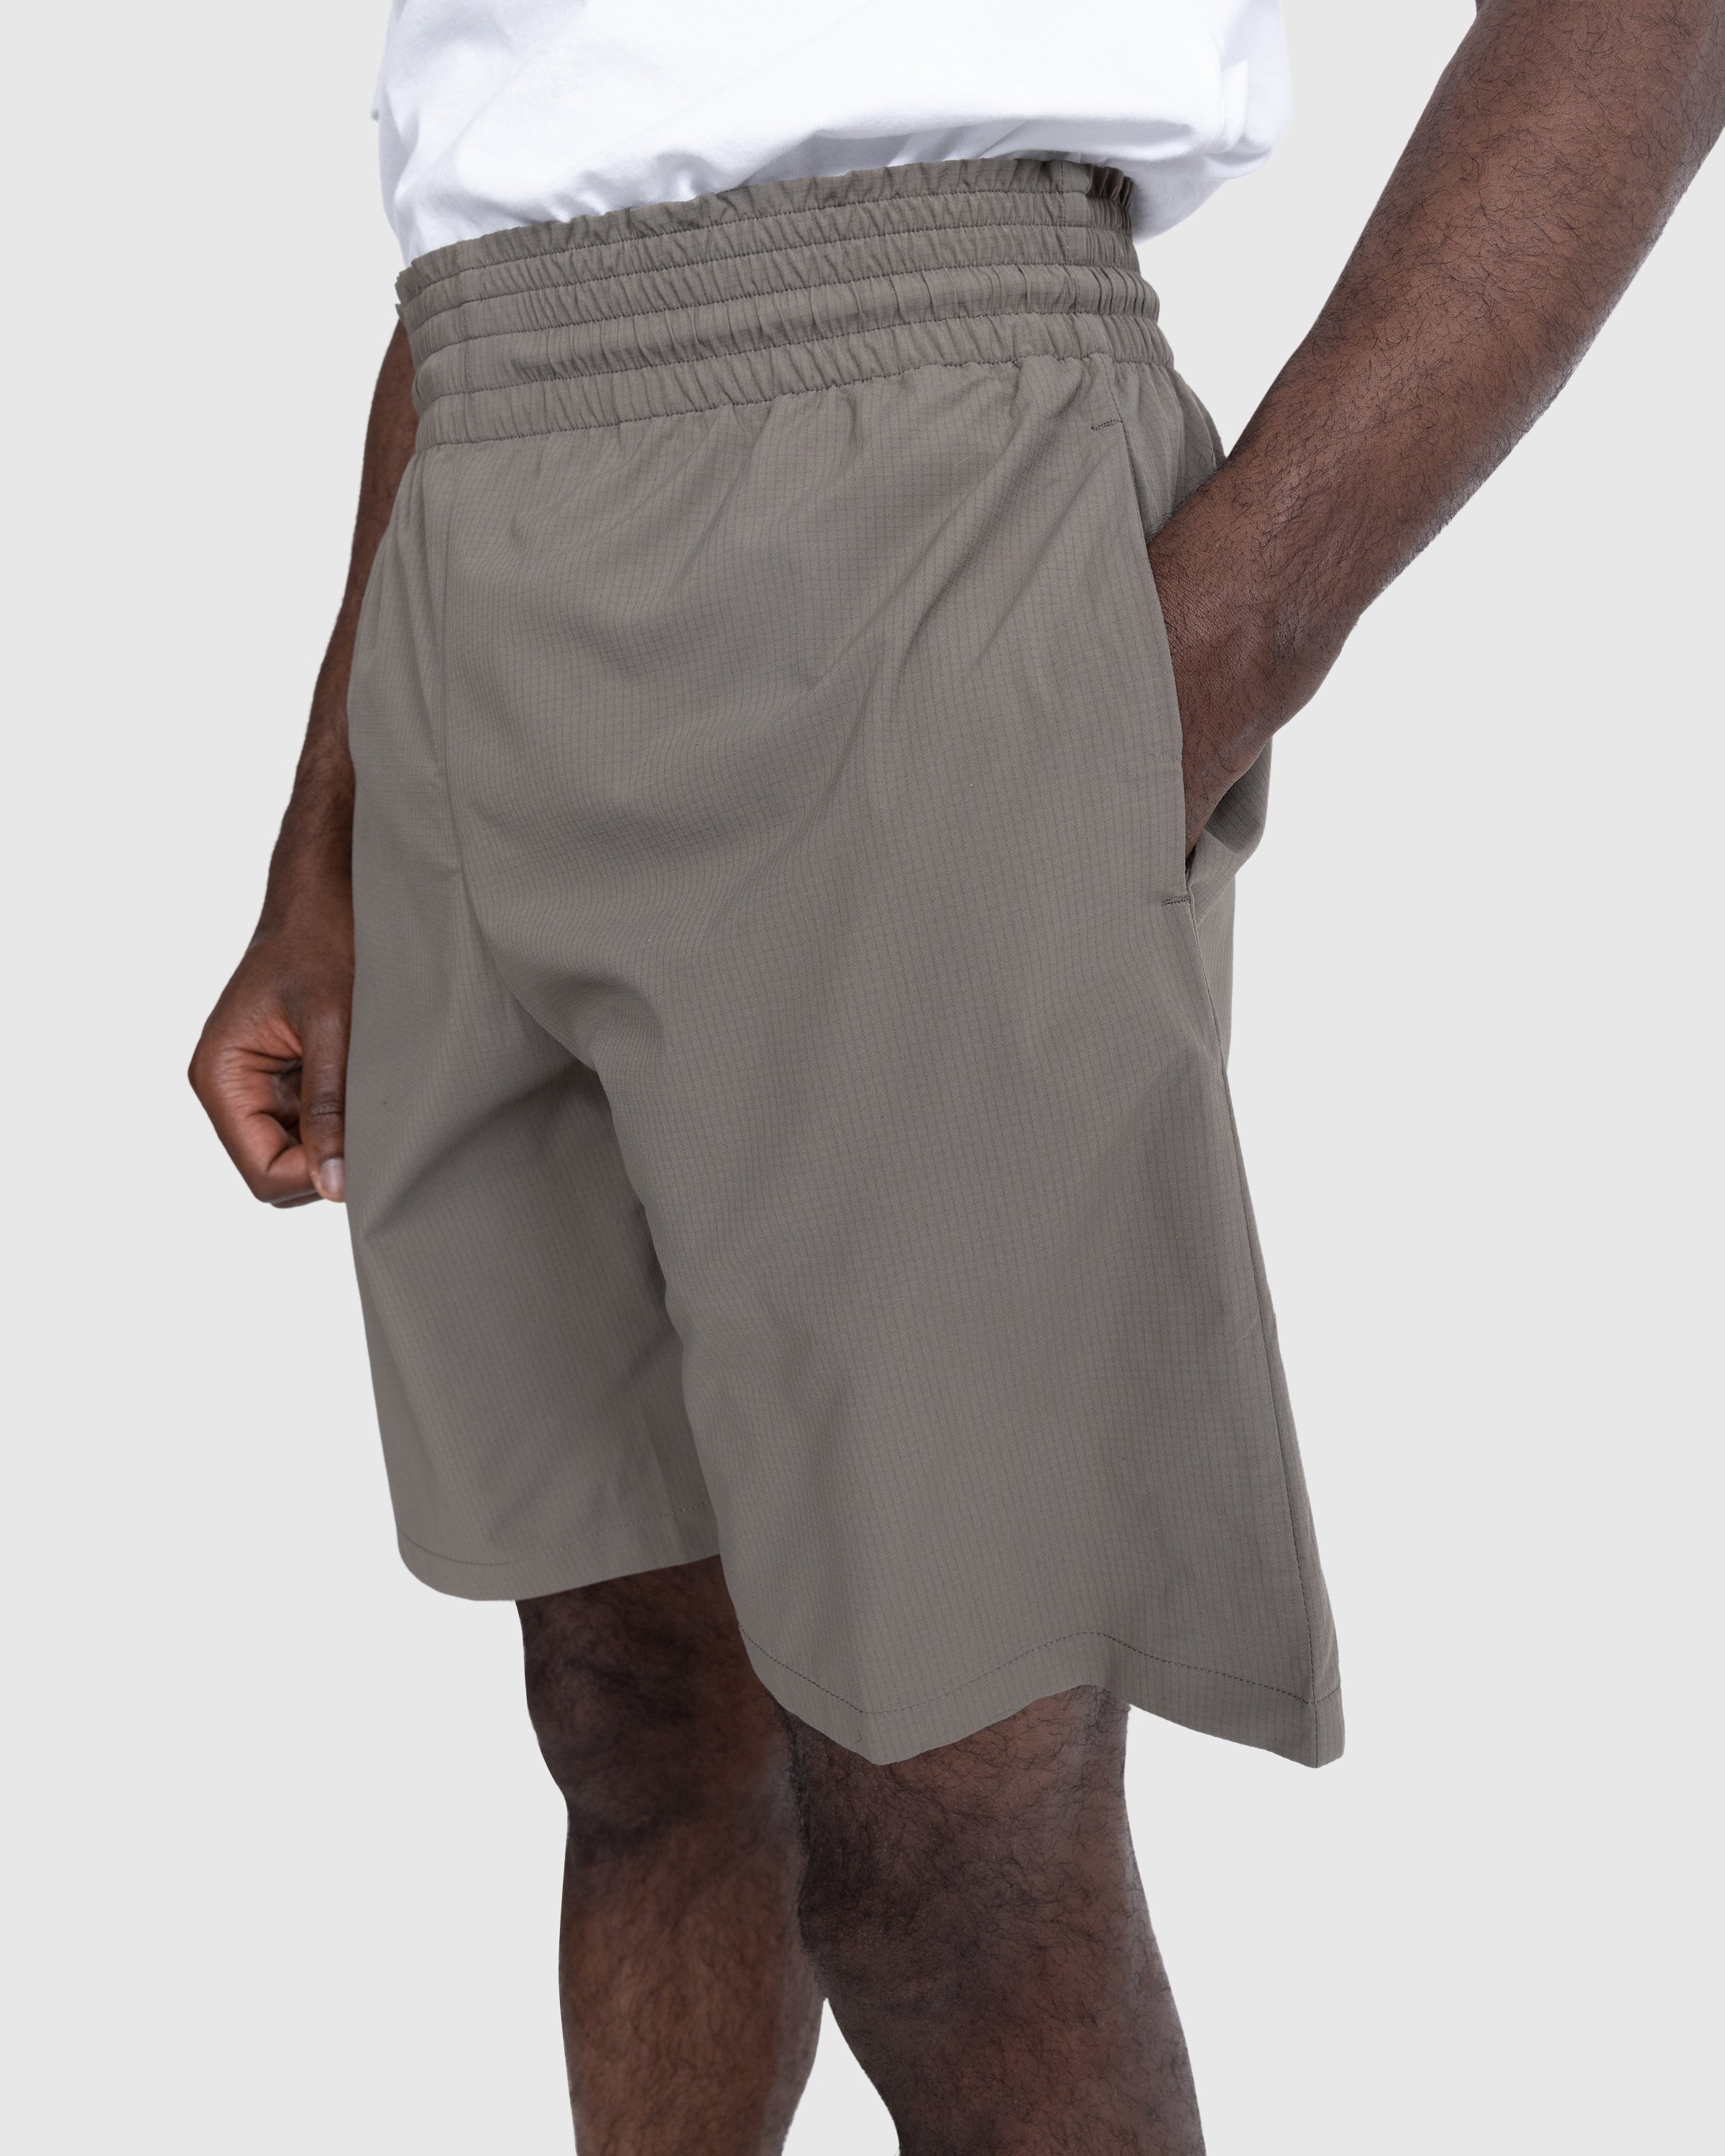 Acne Studios - Embroidered Swim Shorts Mud Grey - Clothing - Beige - Image 5